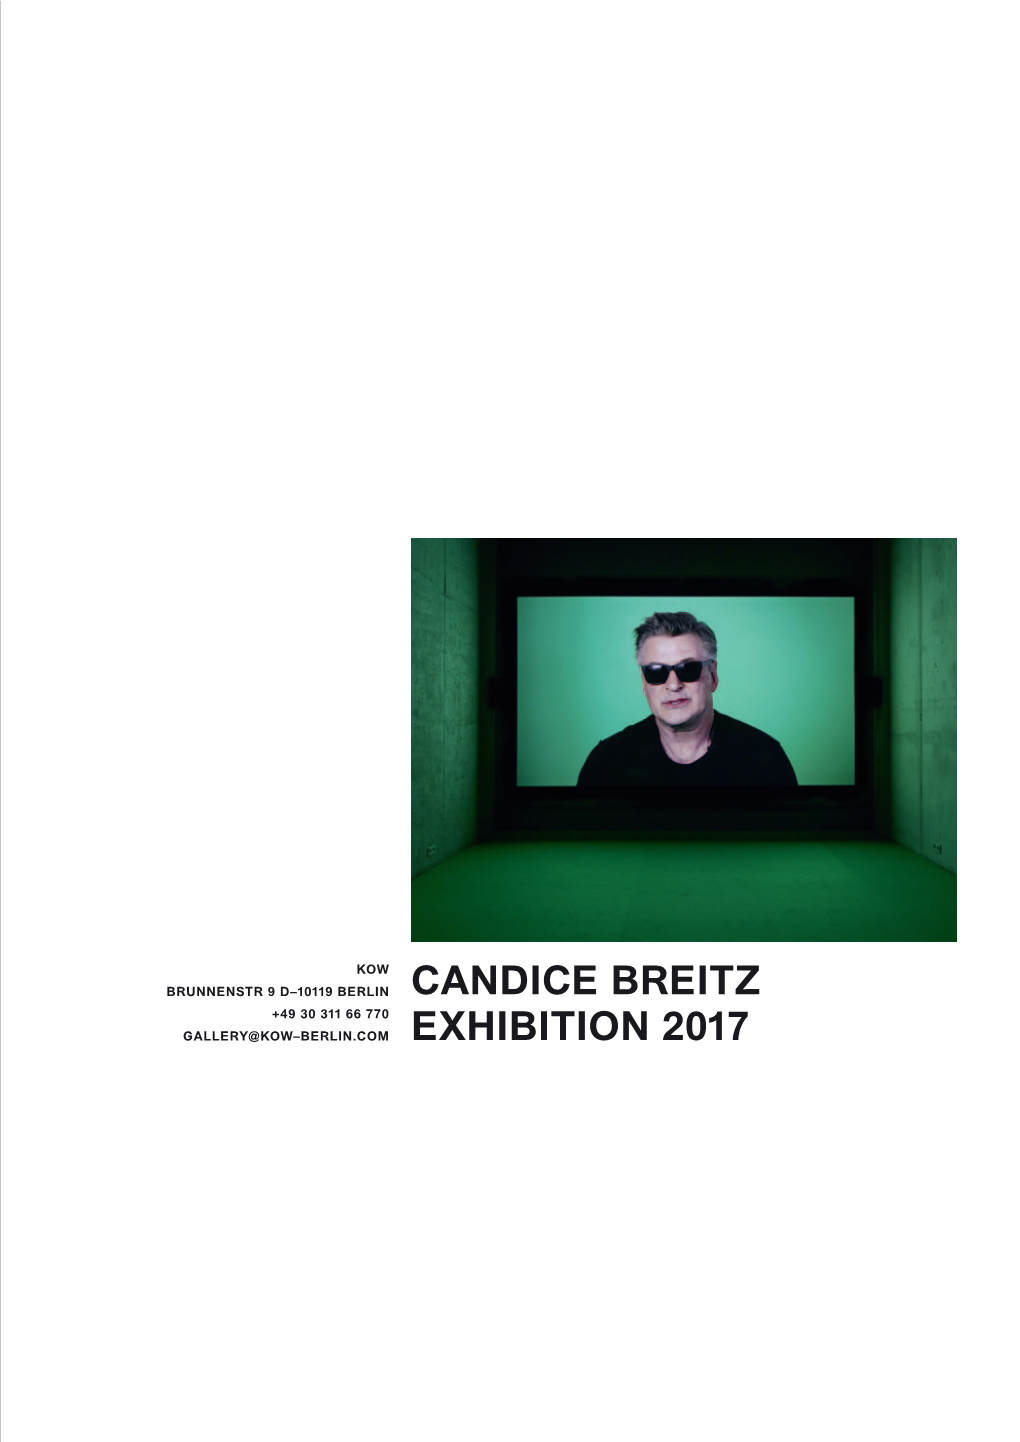 Candice Breitz